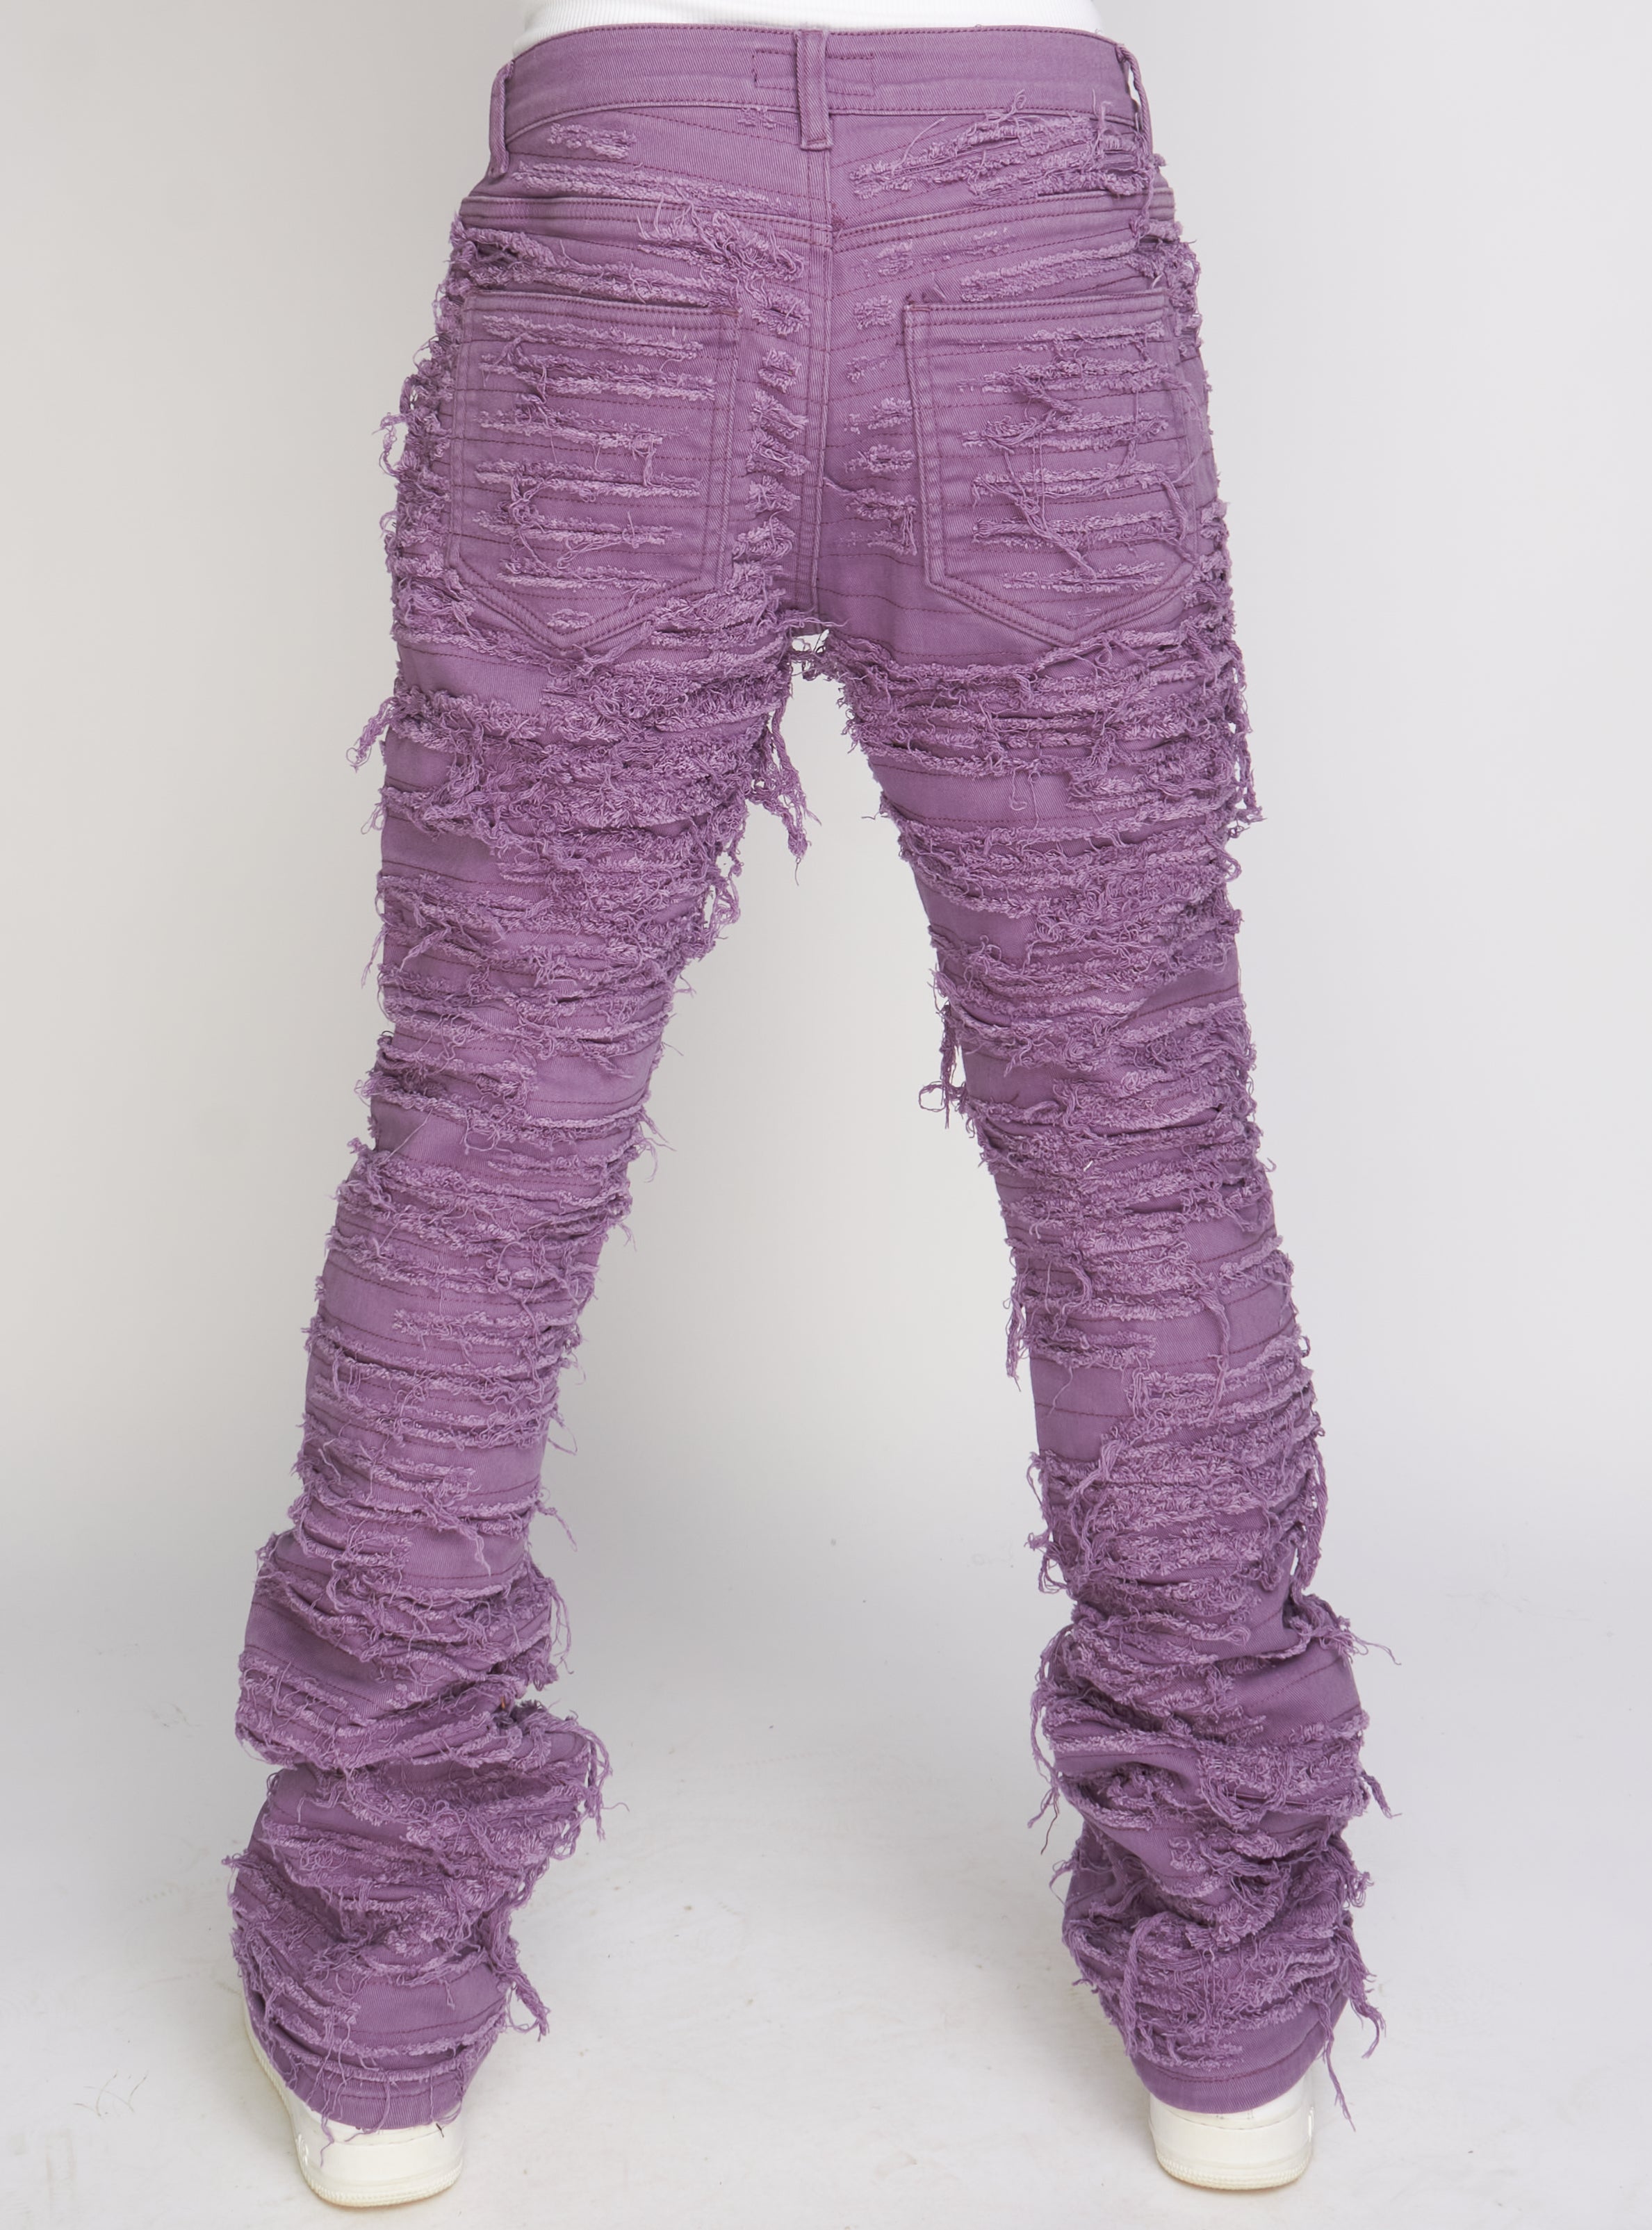 Politics Jeans - Light Purple - Debris505